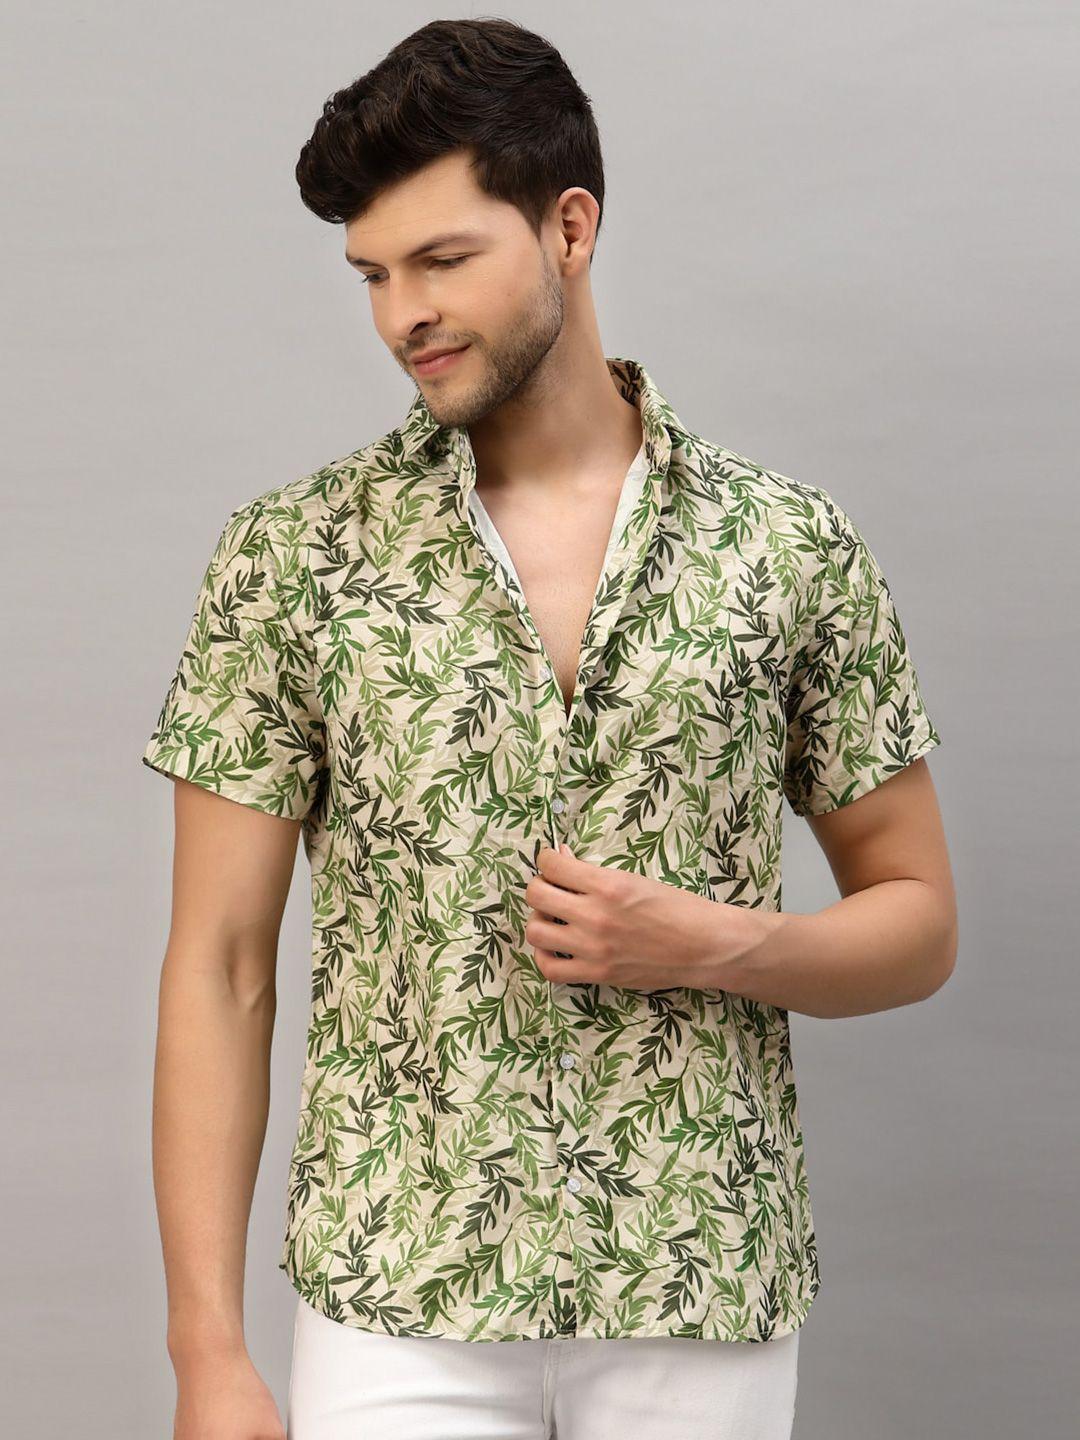 gavin paris floral printed smart slim fit casual shirt